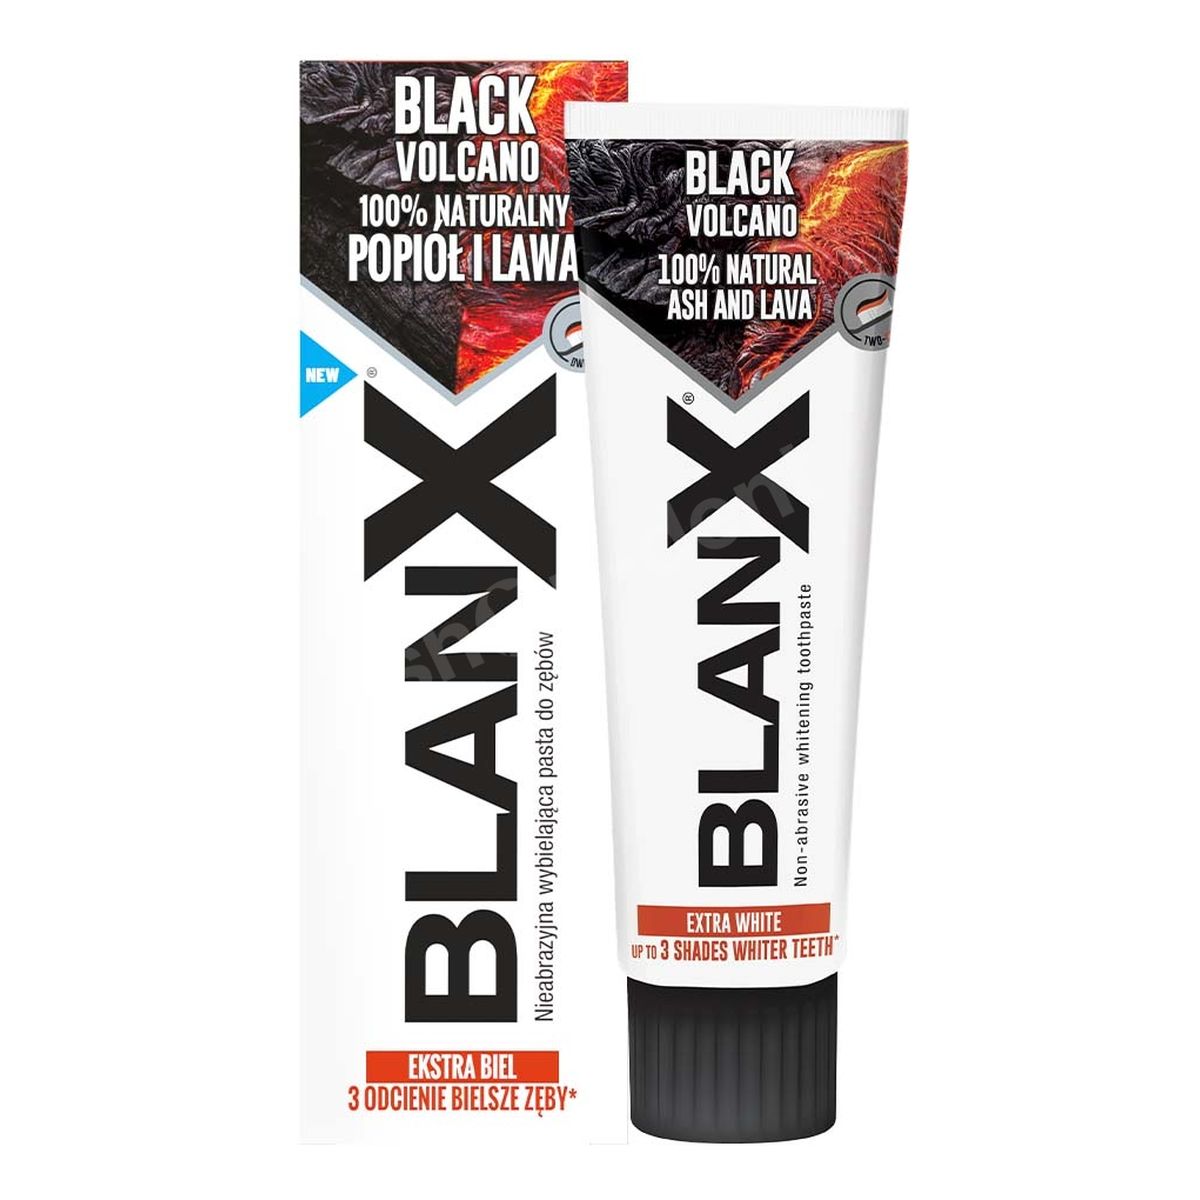 BlanX Black Volcano Wybielająca pasta do zębów z pyłem i lawą wulkaniczną 75ml